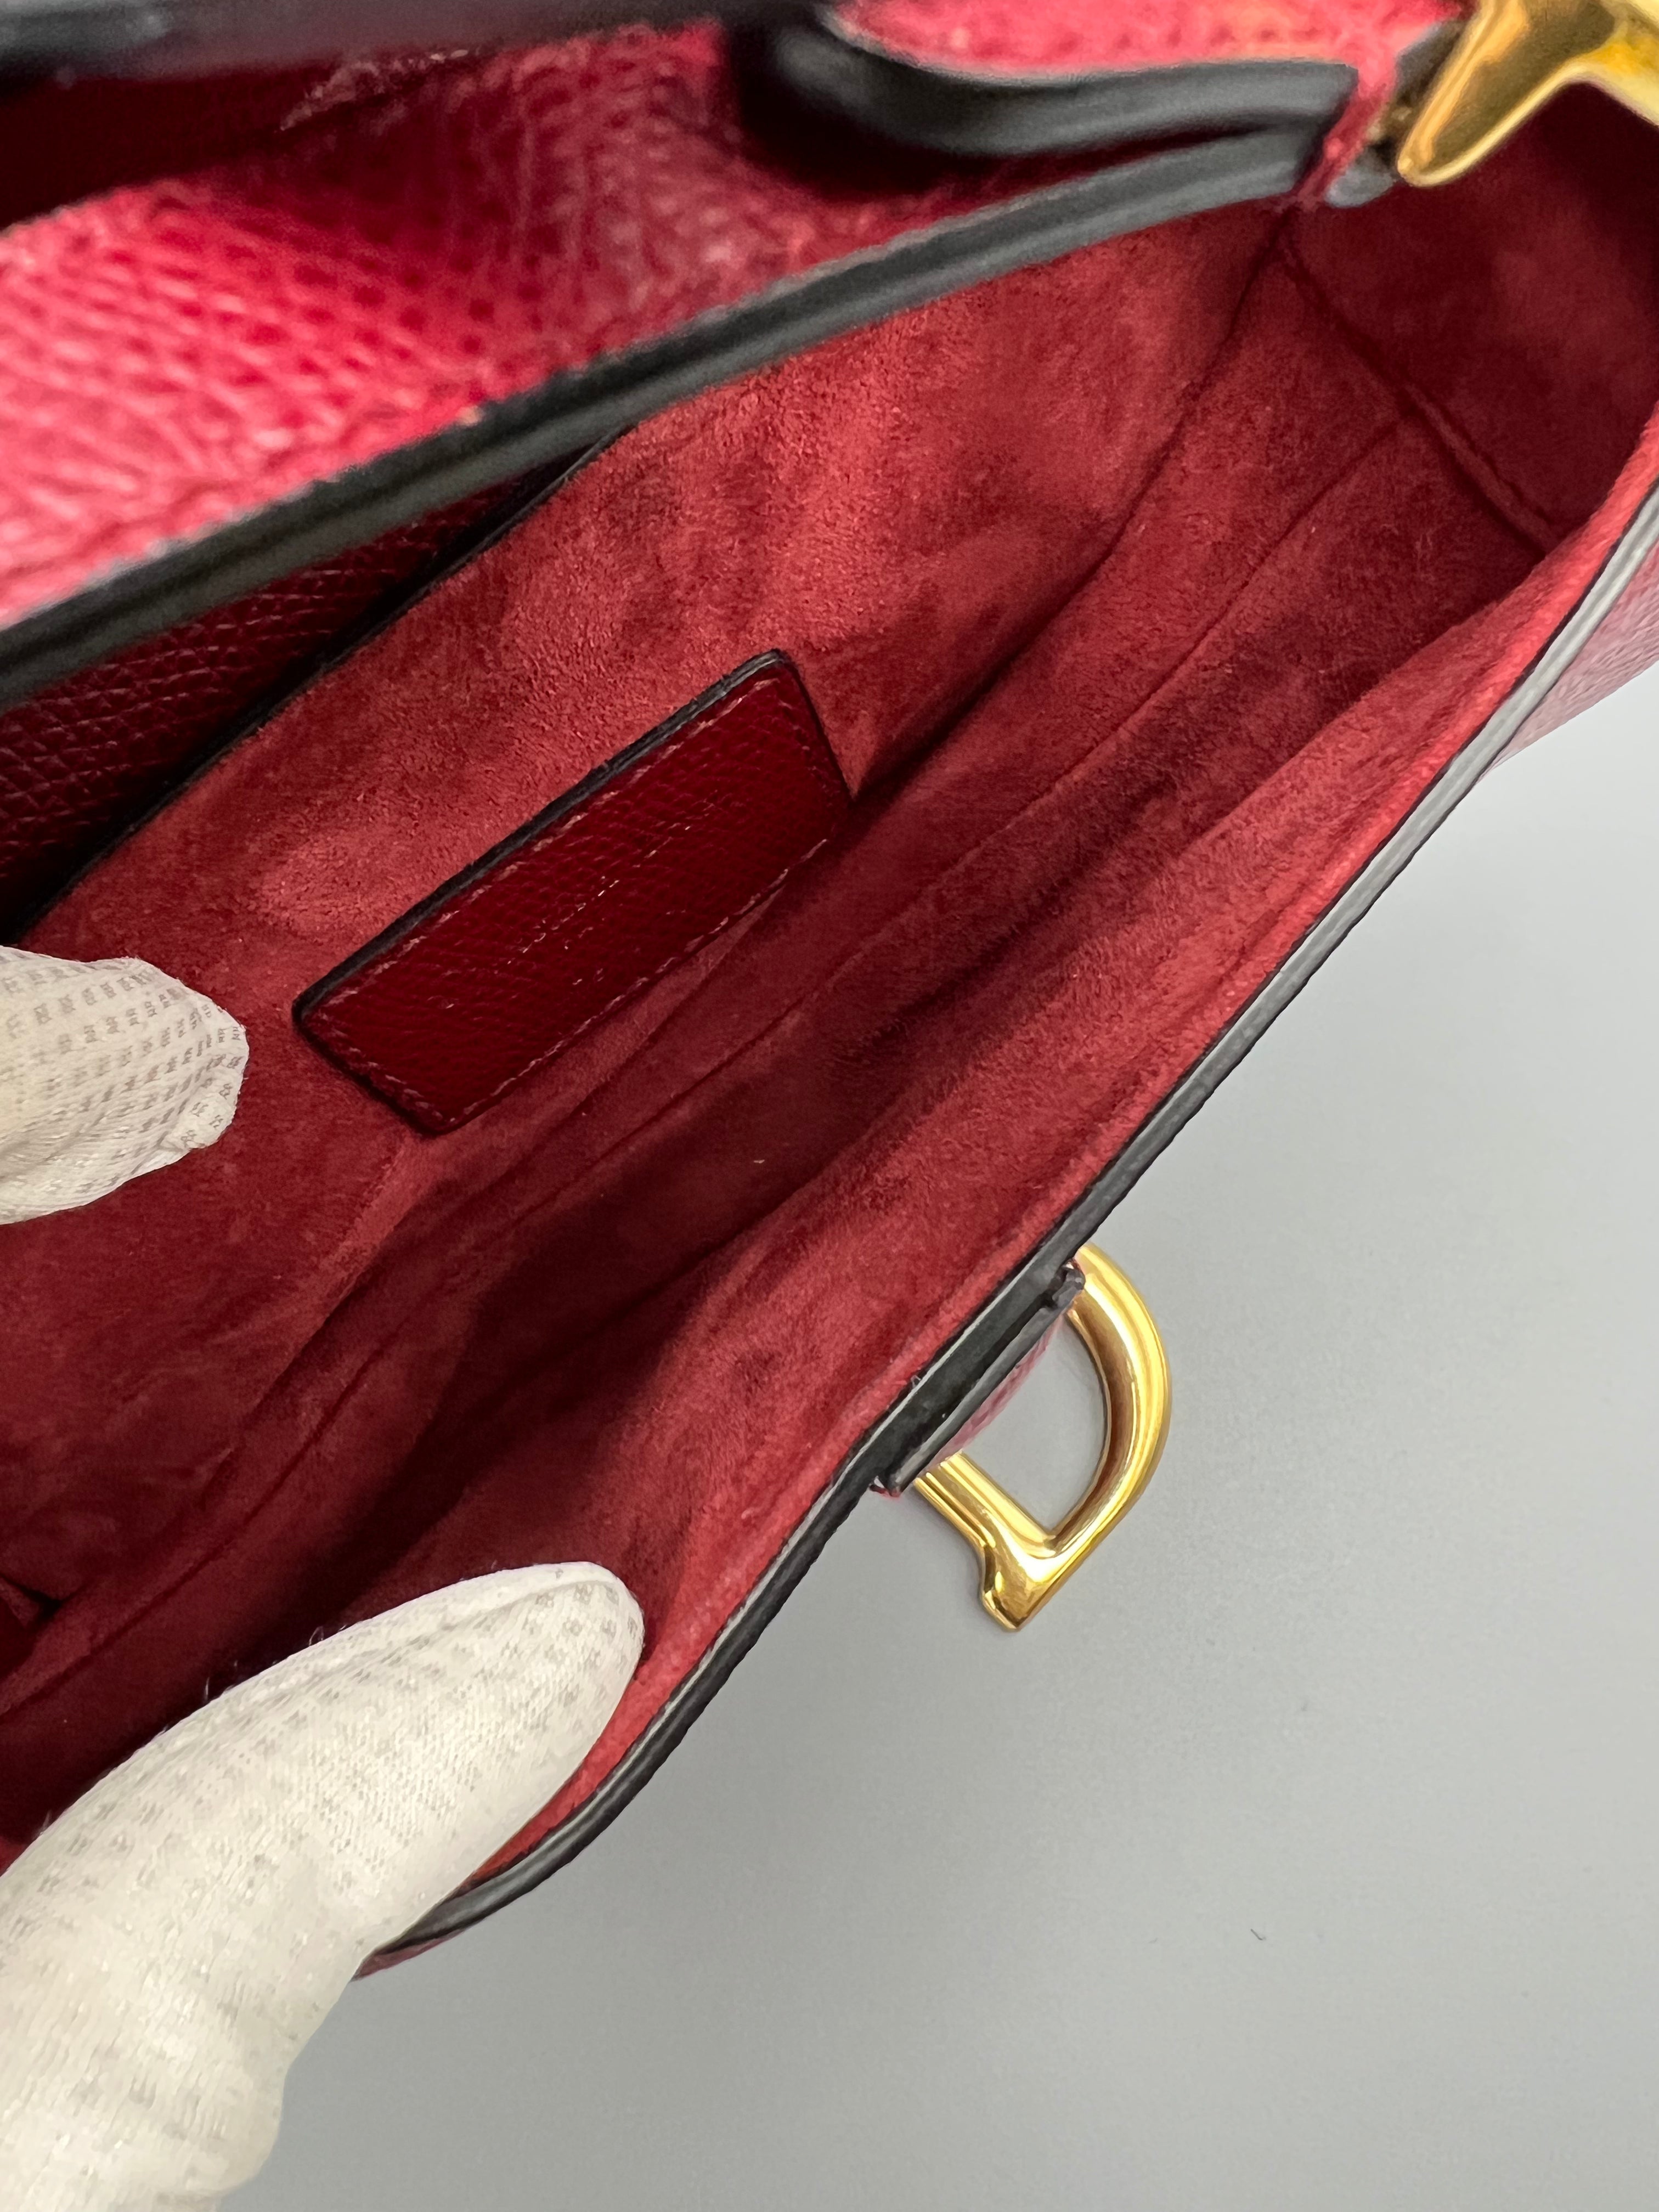 Pre-owned Dior Mini Saddle Bag